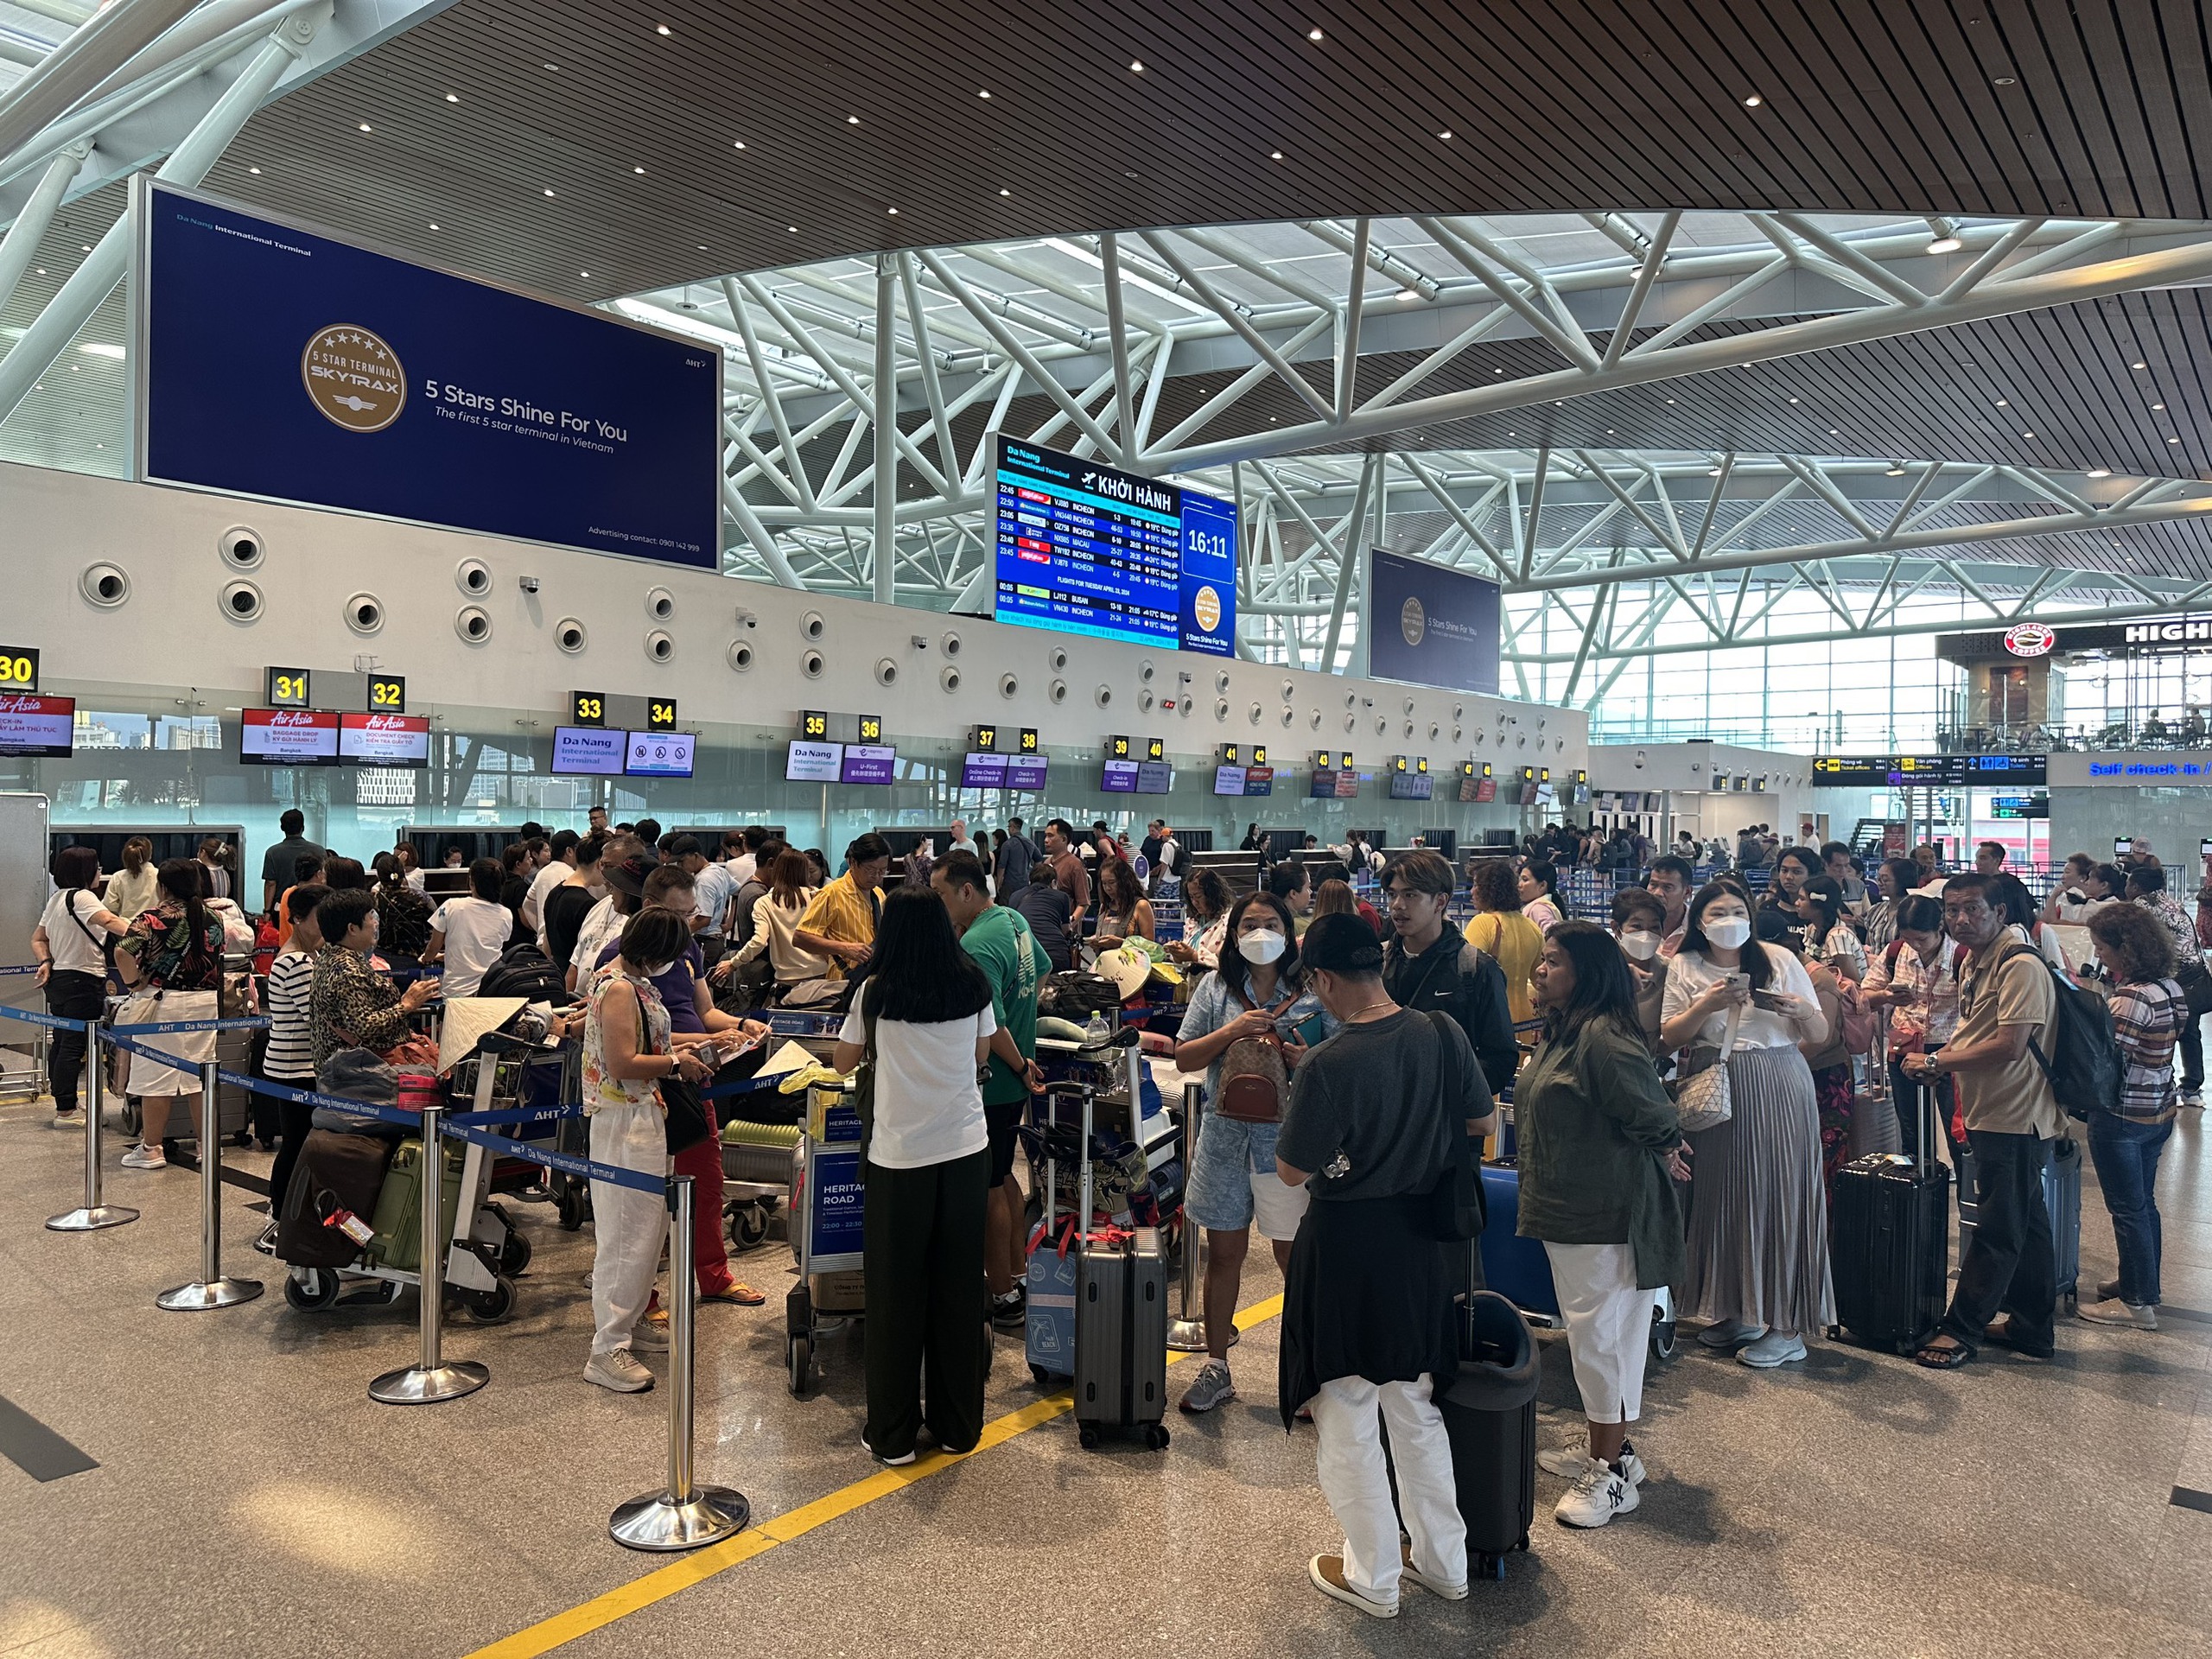 يهدف تطبيق الذكاء الاصطناعي إلى اختصار وقت تسجيل الوصول في مطار دا نانغ